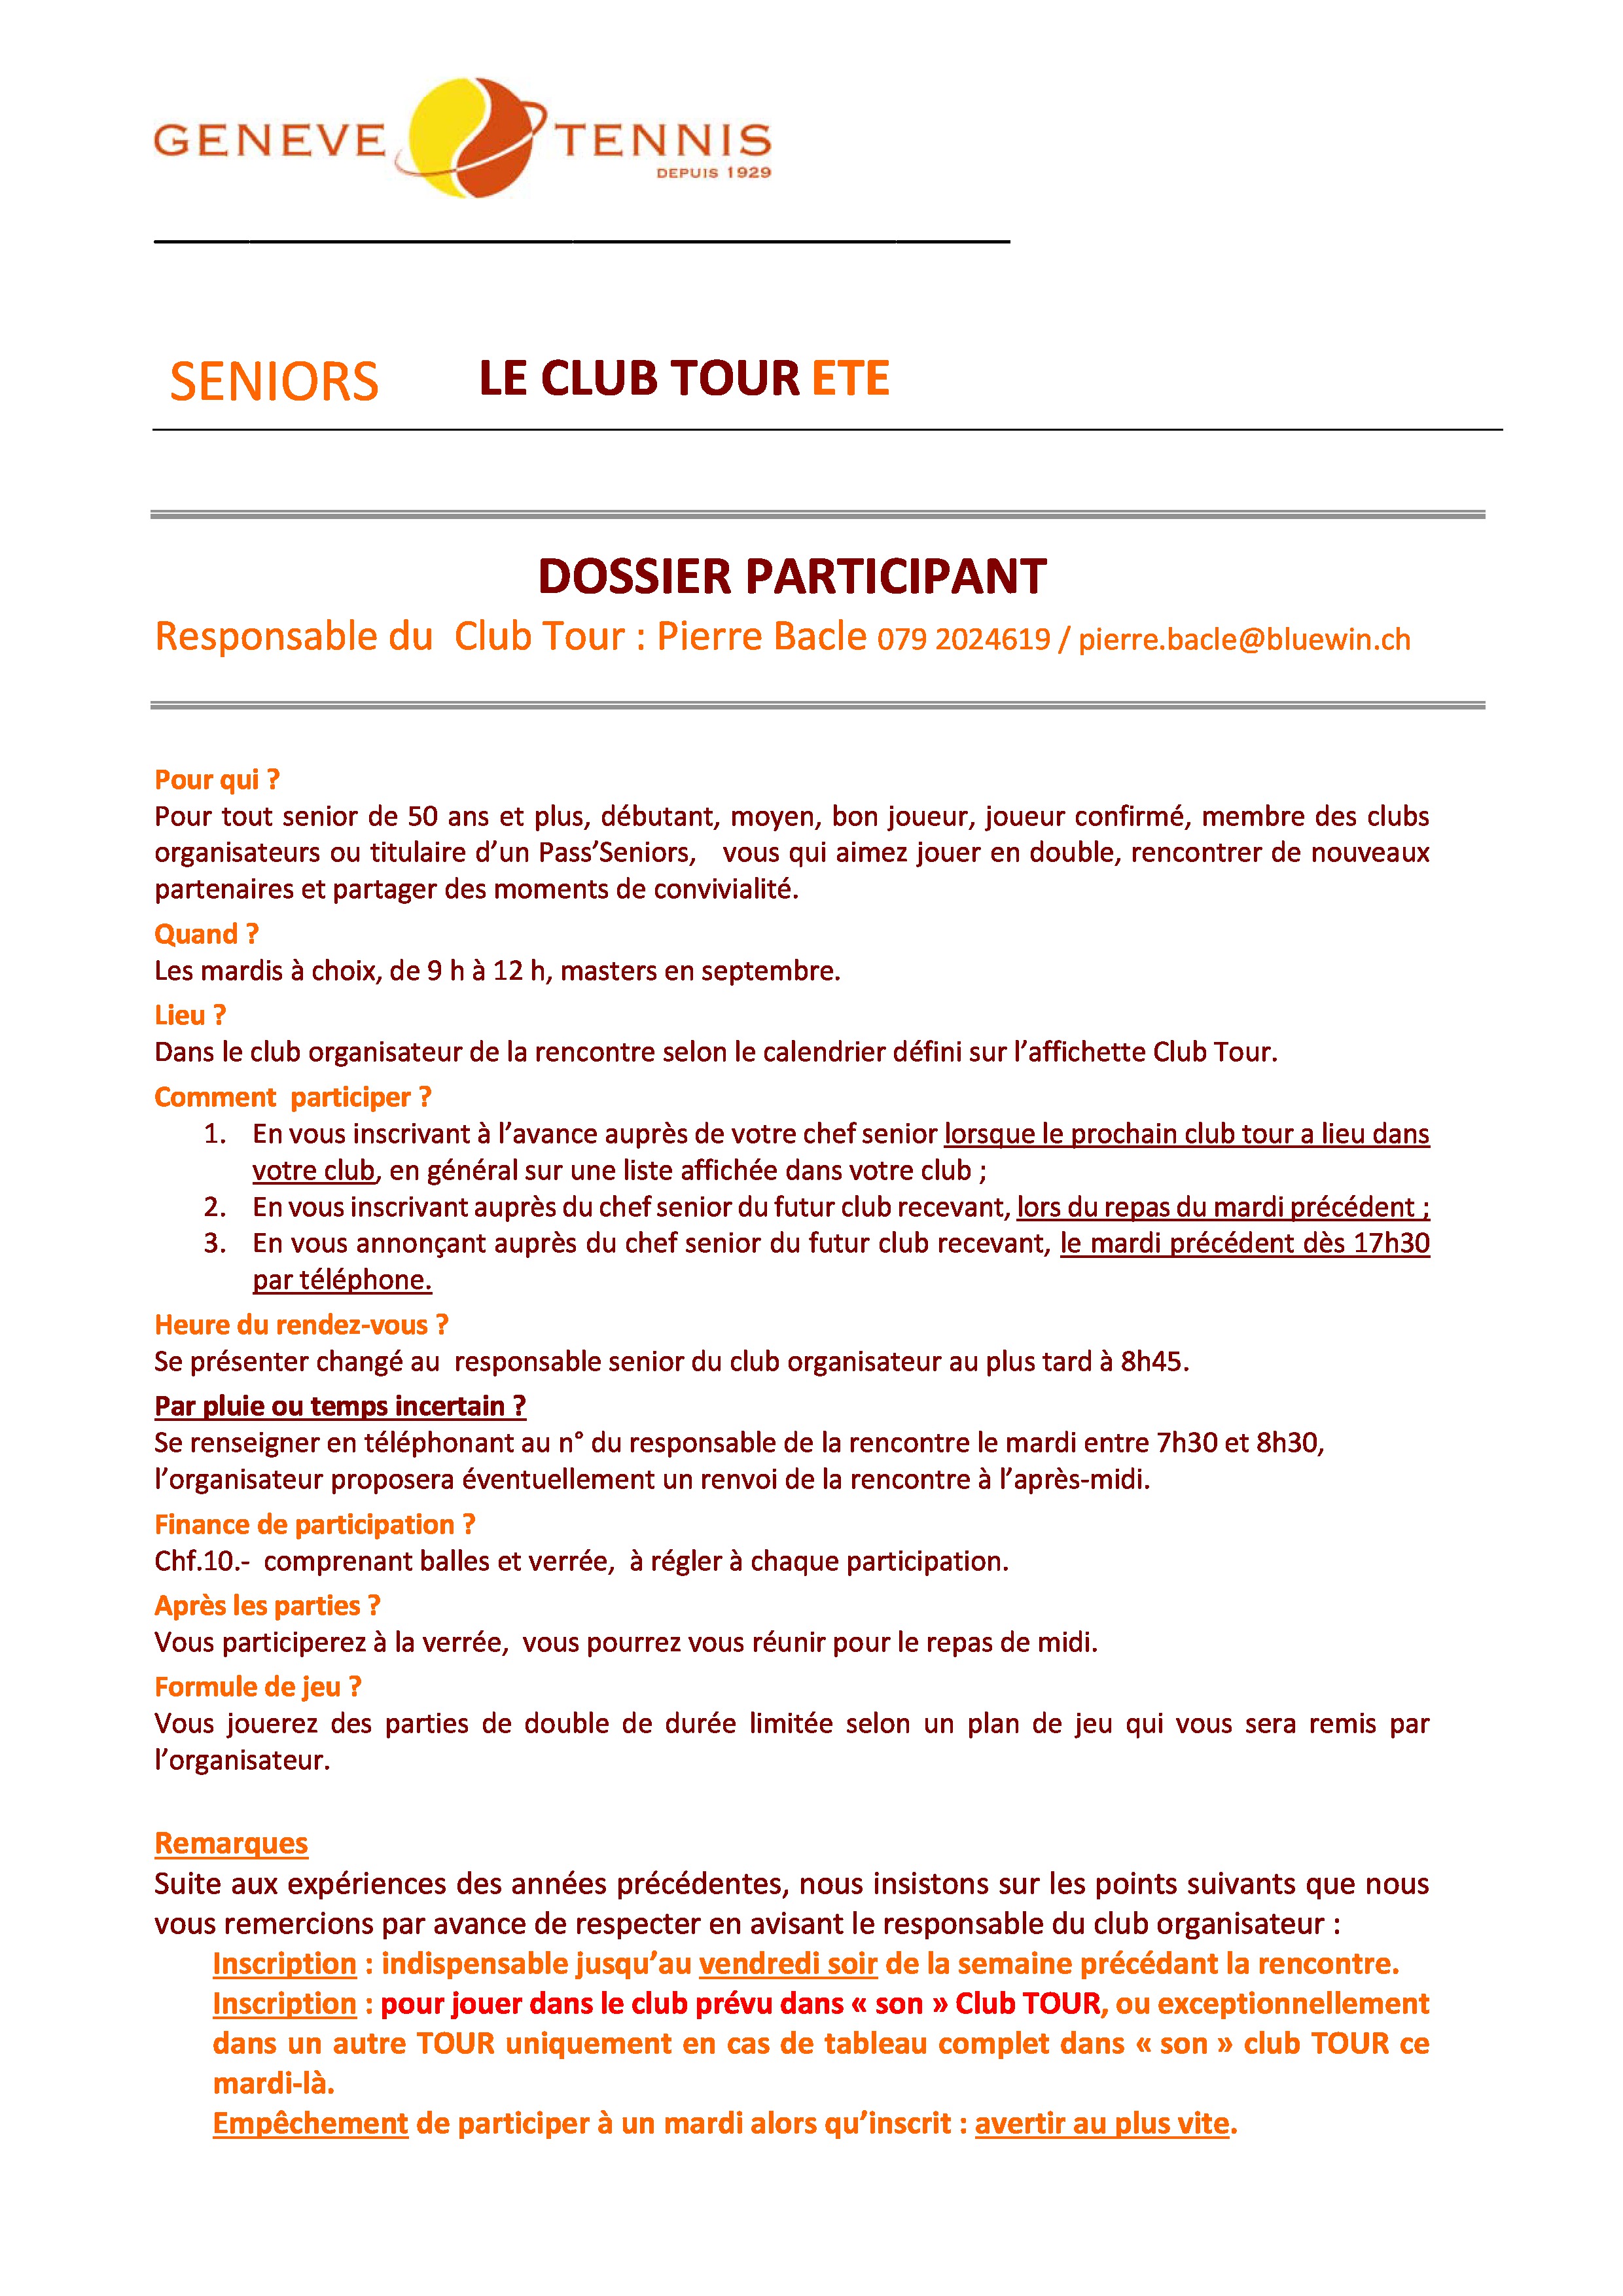 Dossier participant du club tour